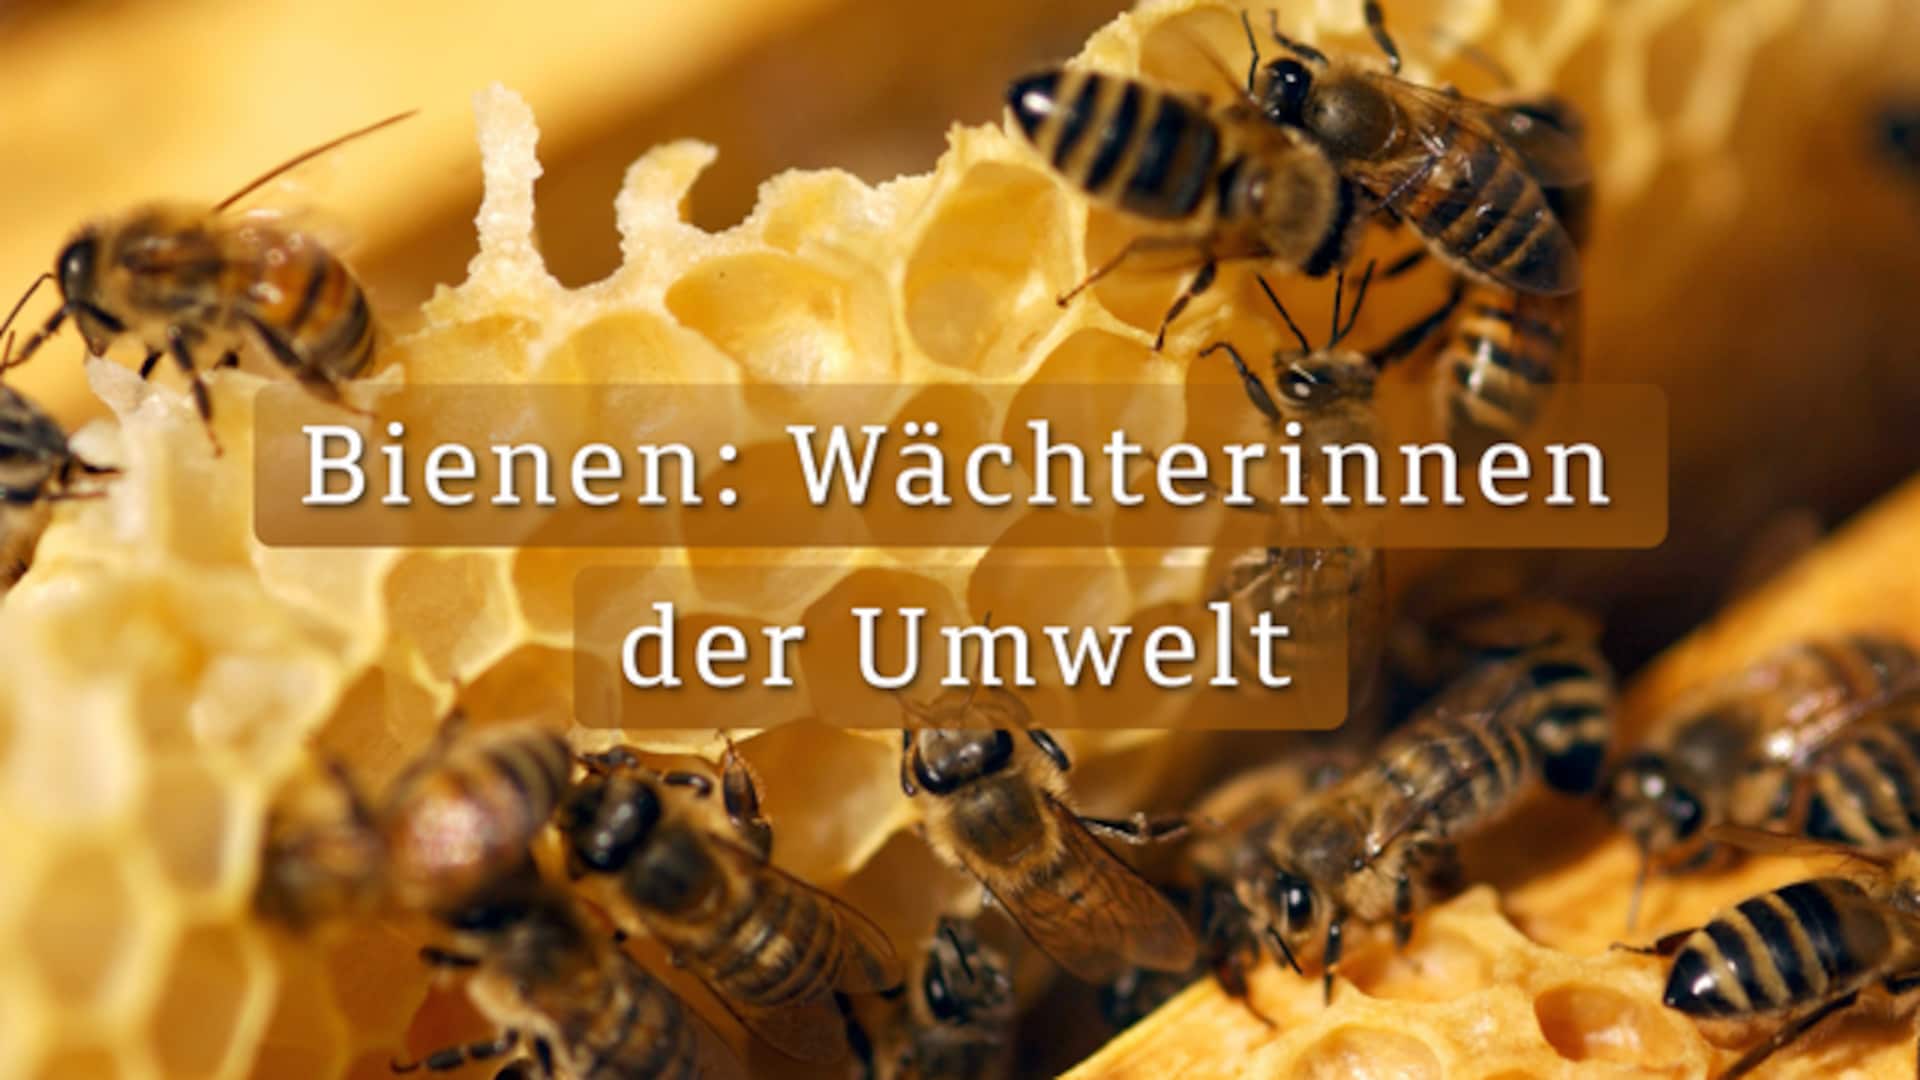 Bienen: Wächterinnen der Umwelt